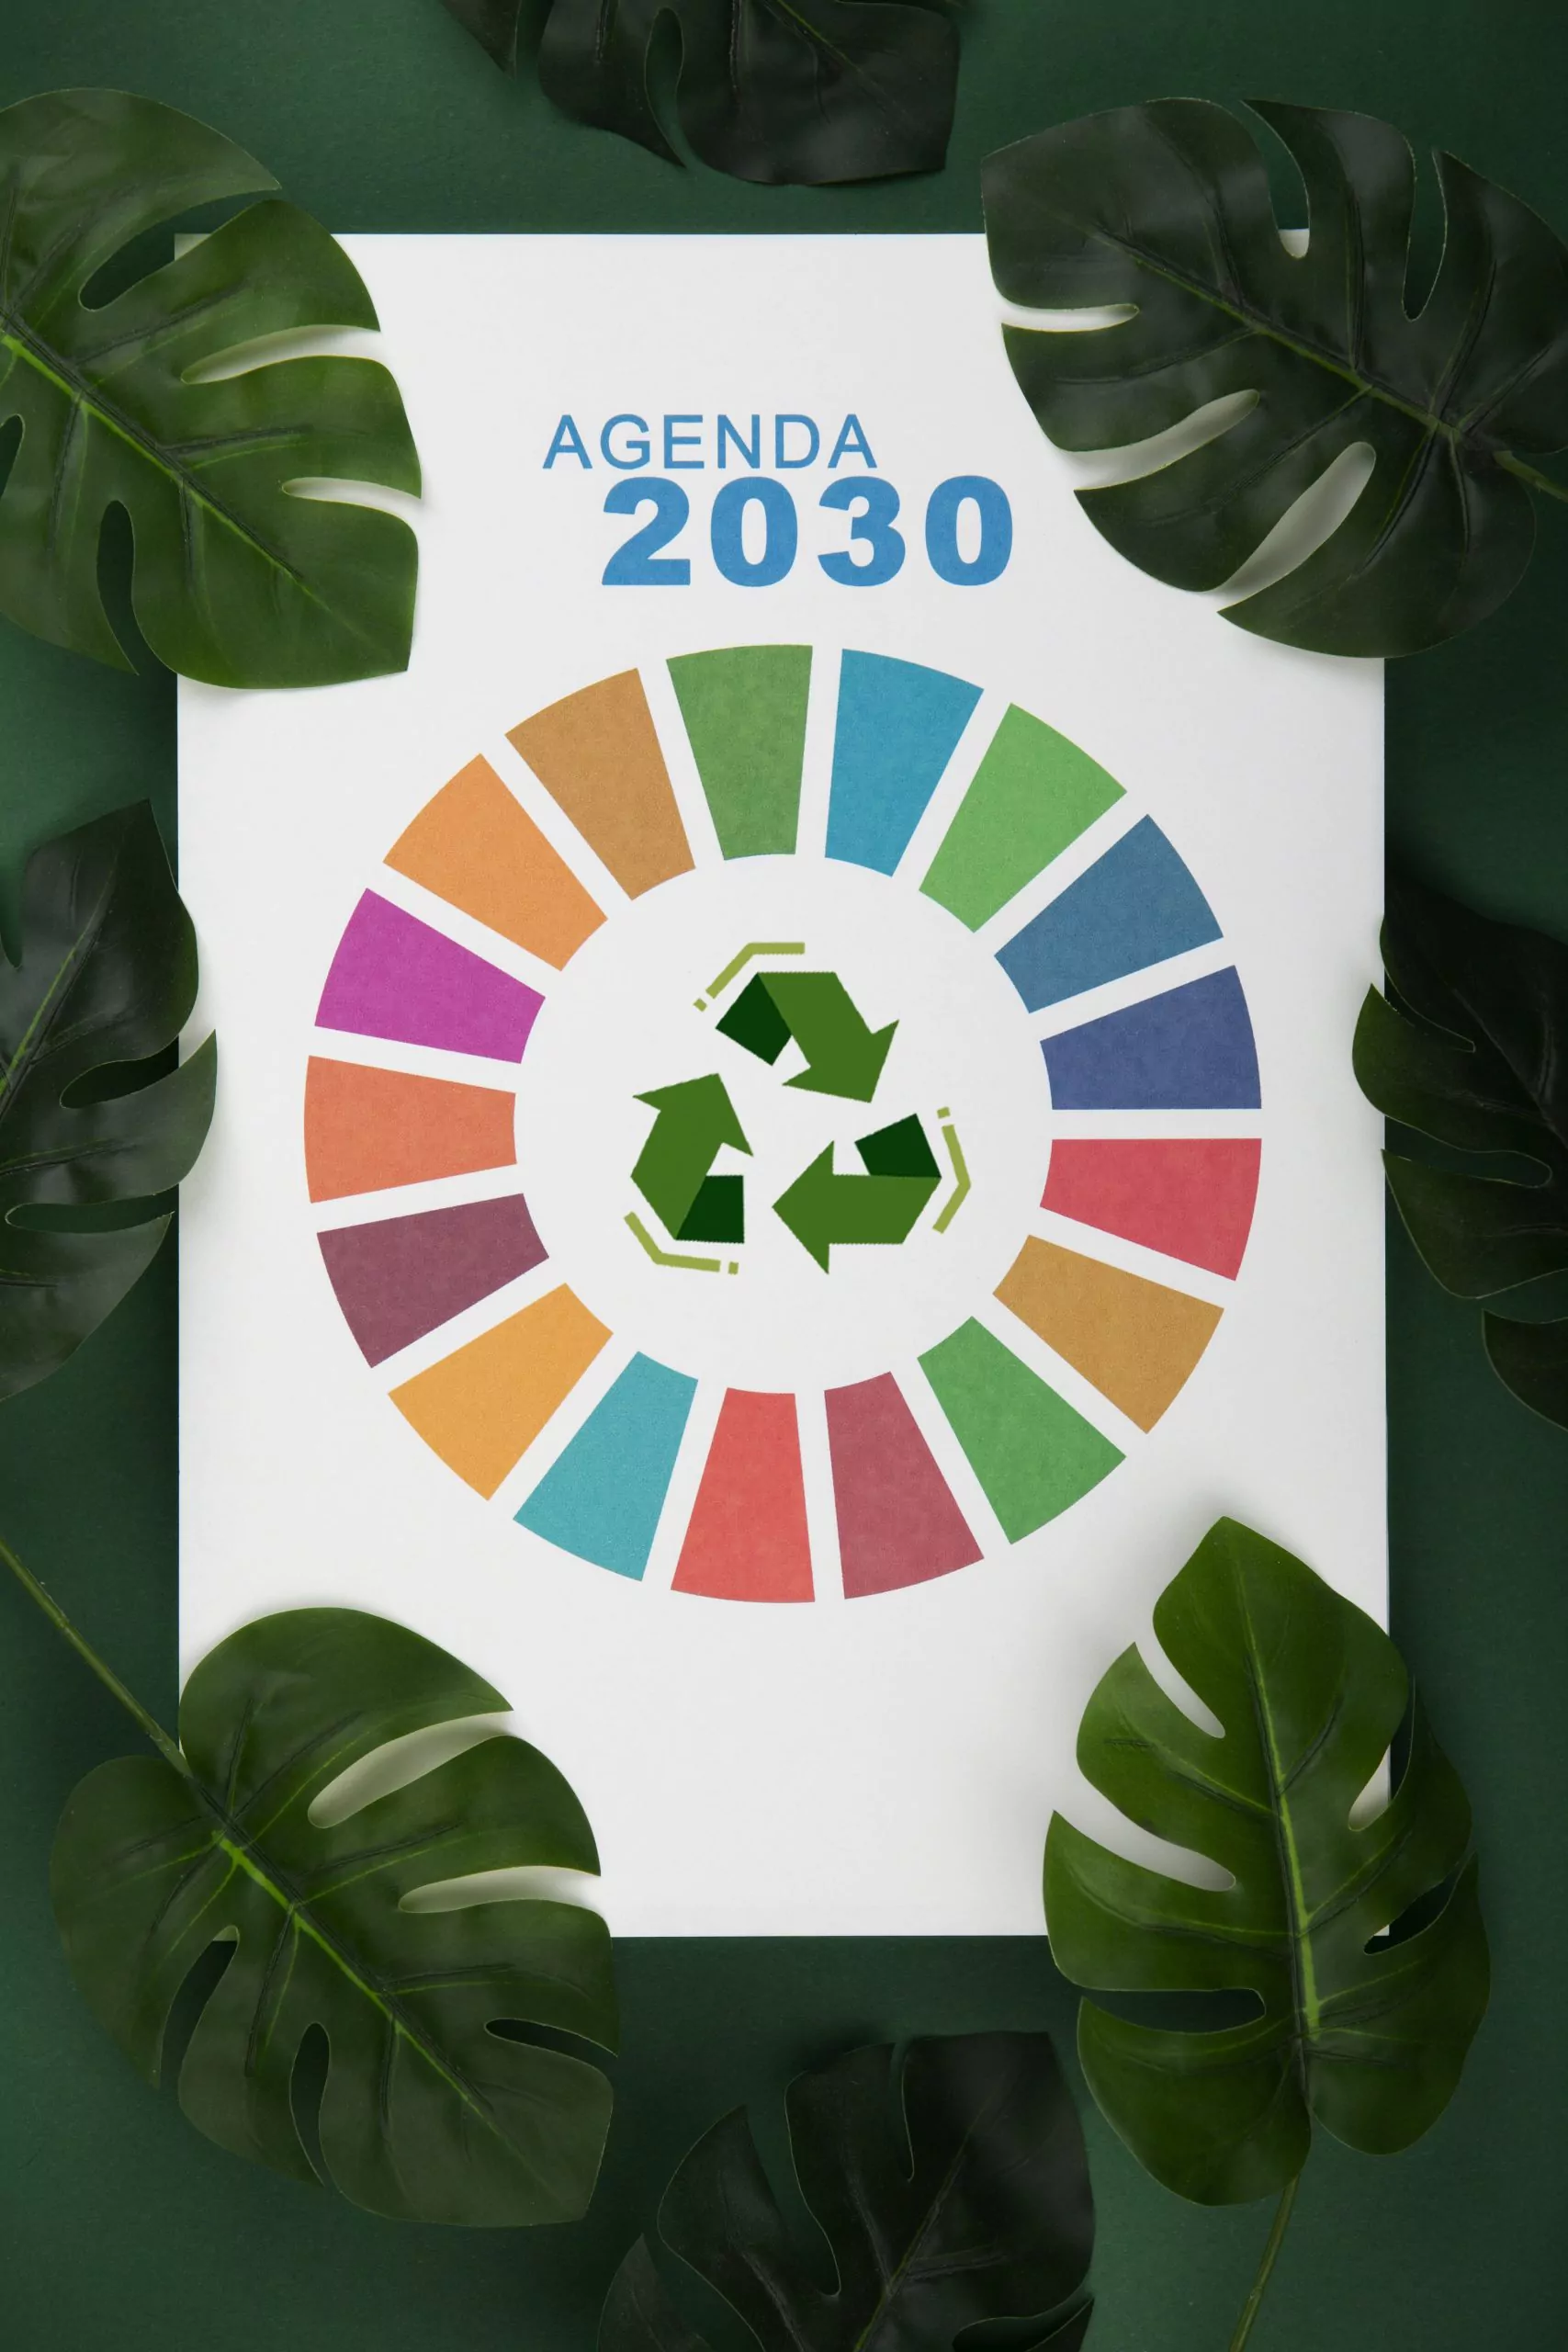 L’agenda 2030 per lo Sviluppo Sostenibile: strategie aziendali e criteri ESG